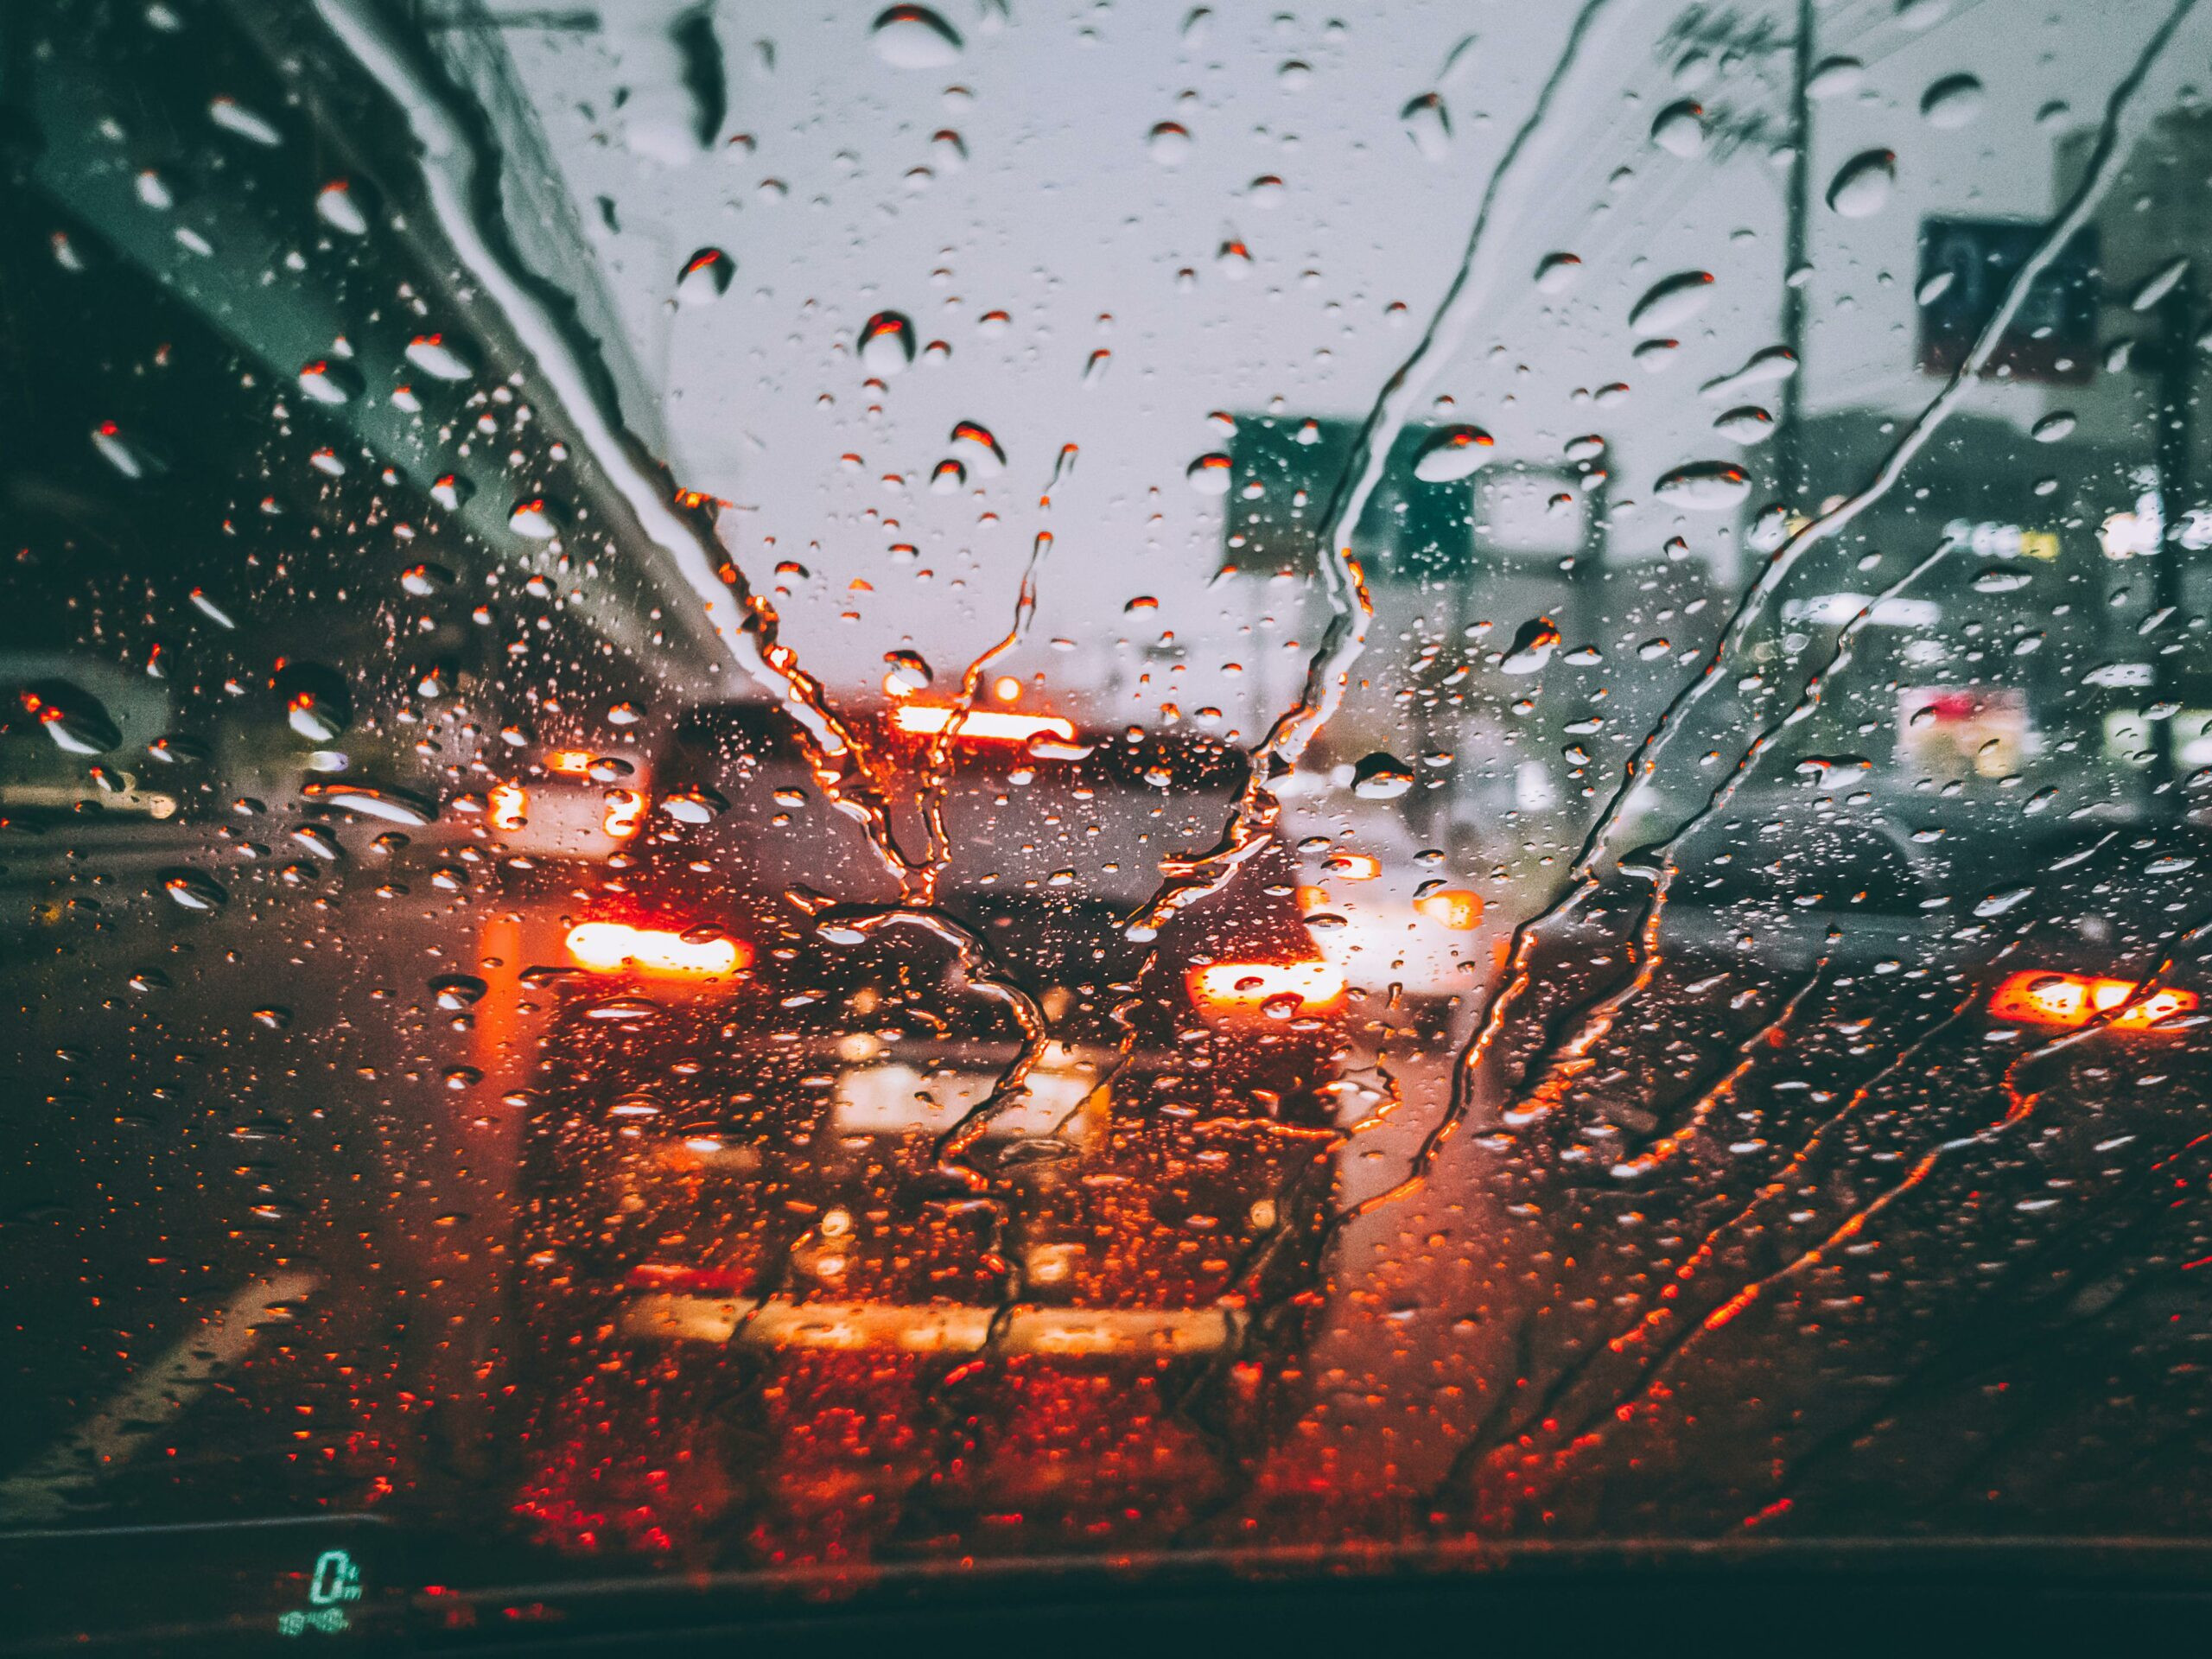 Wet windshield